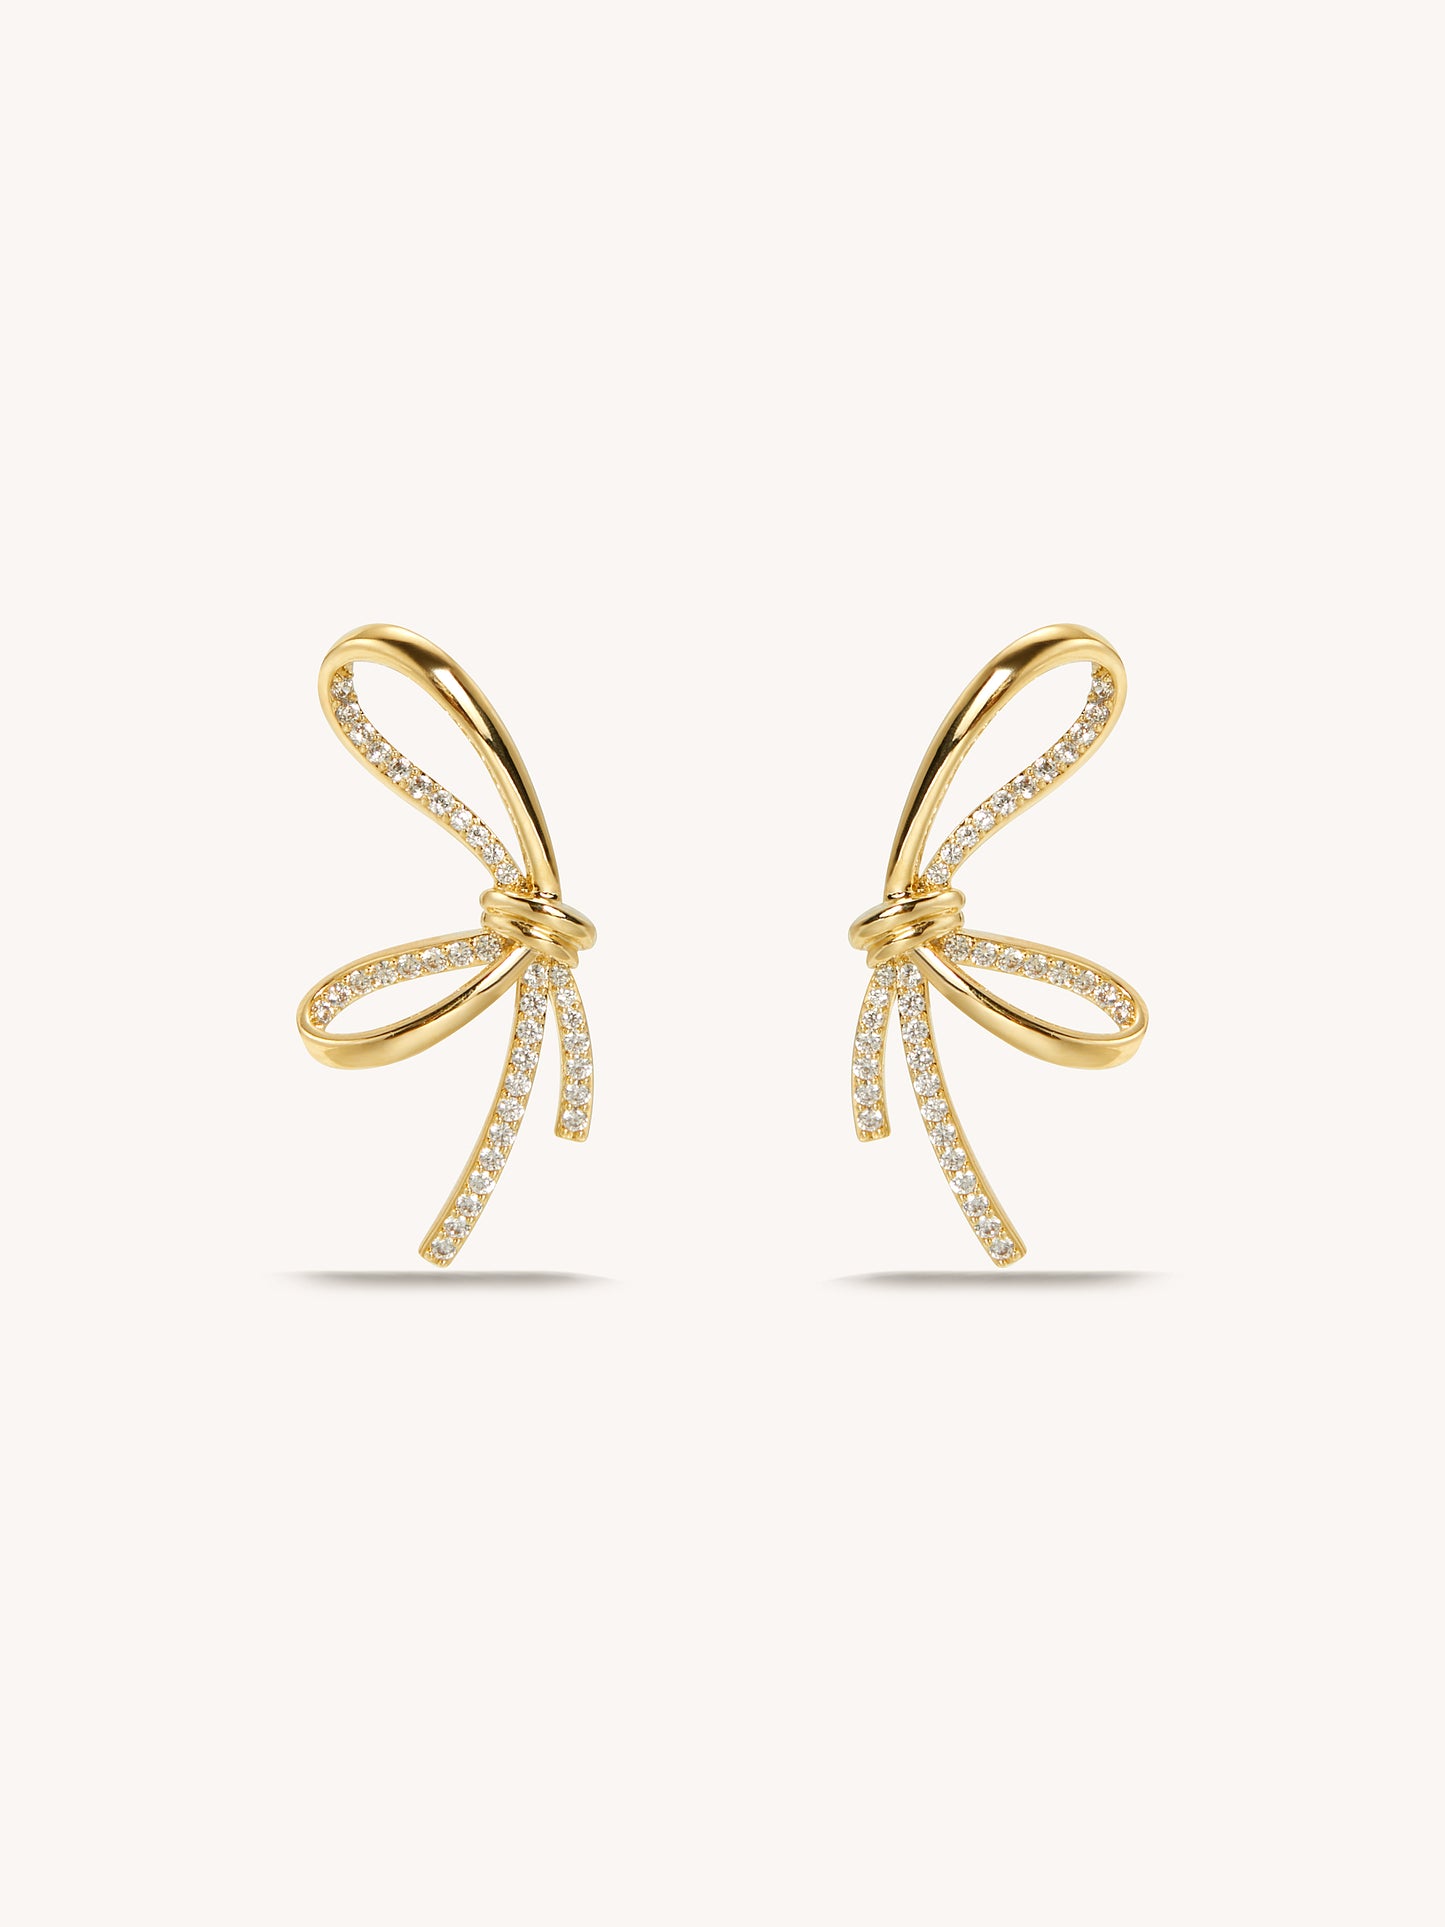 Loire Knot Earrings